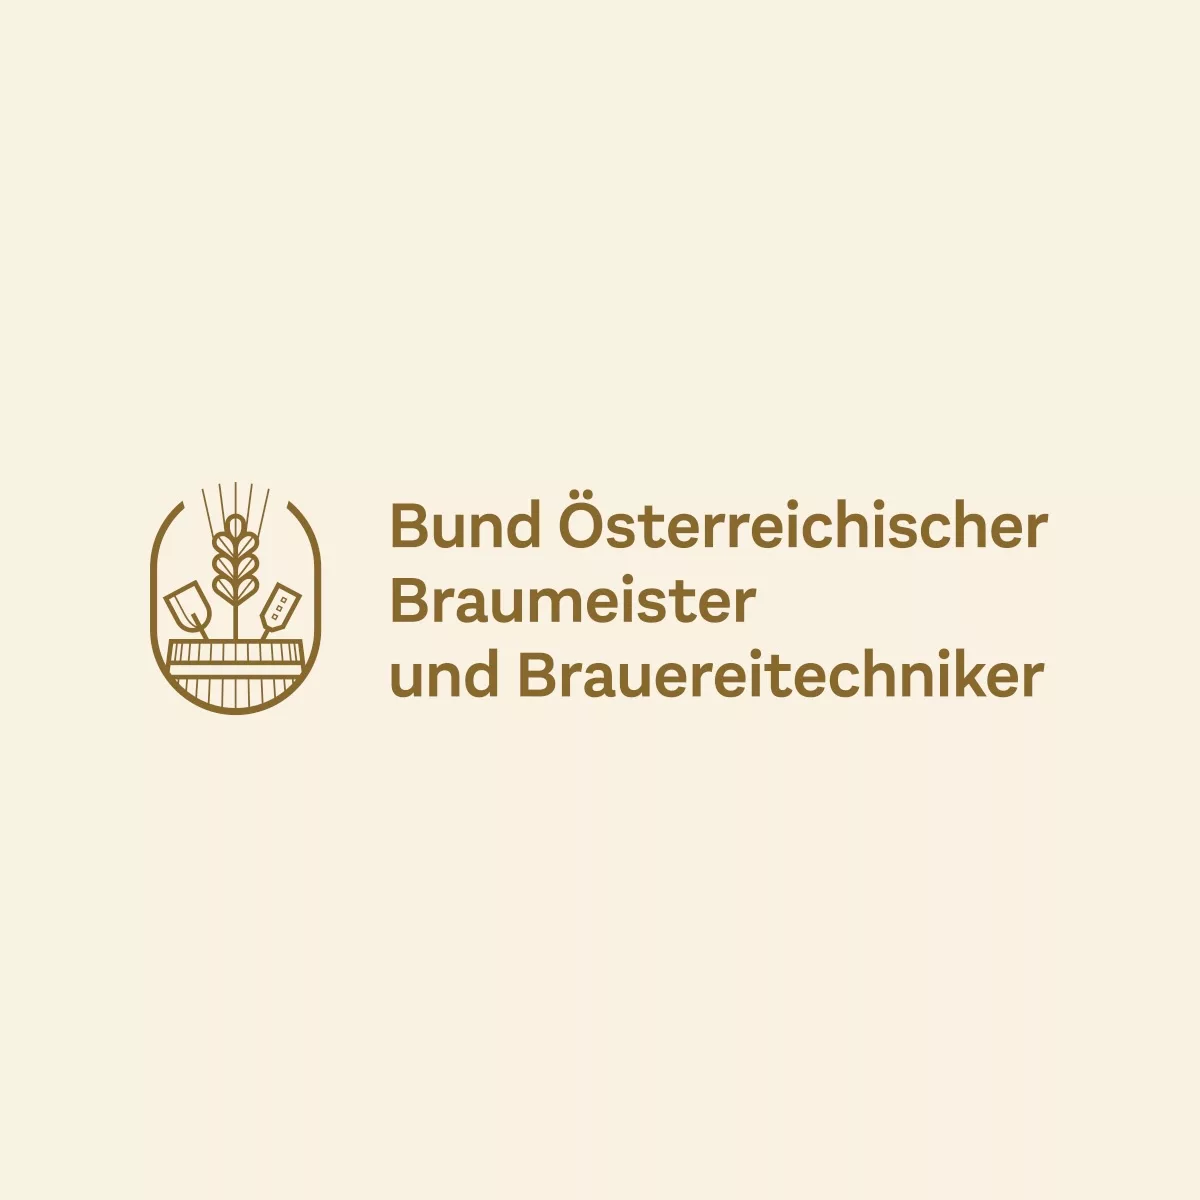 Bund Österreichischer Braumeister und Brauereitechniker